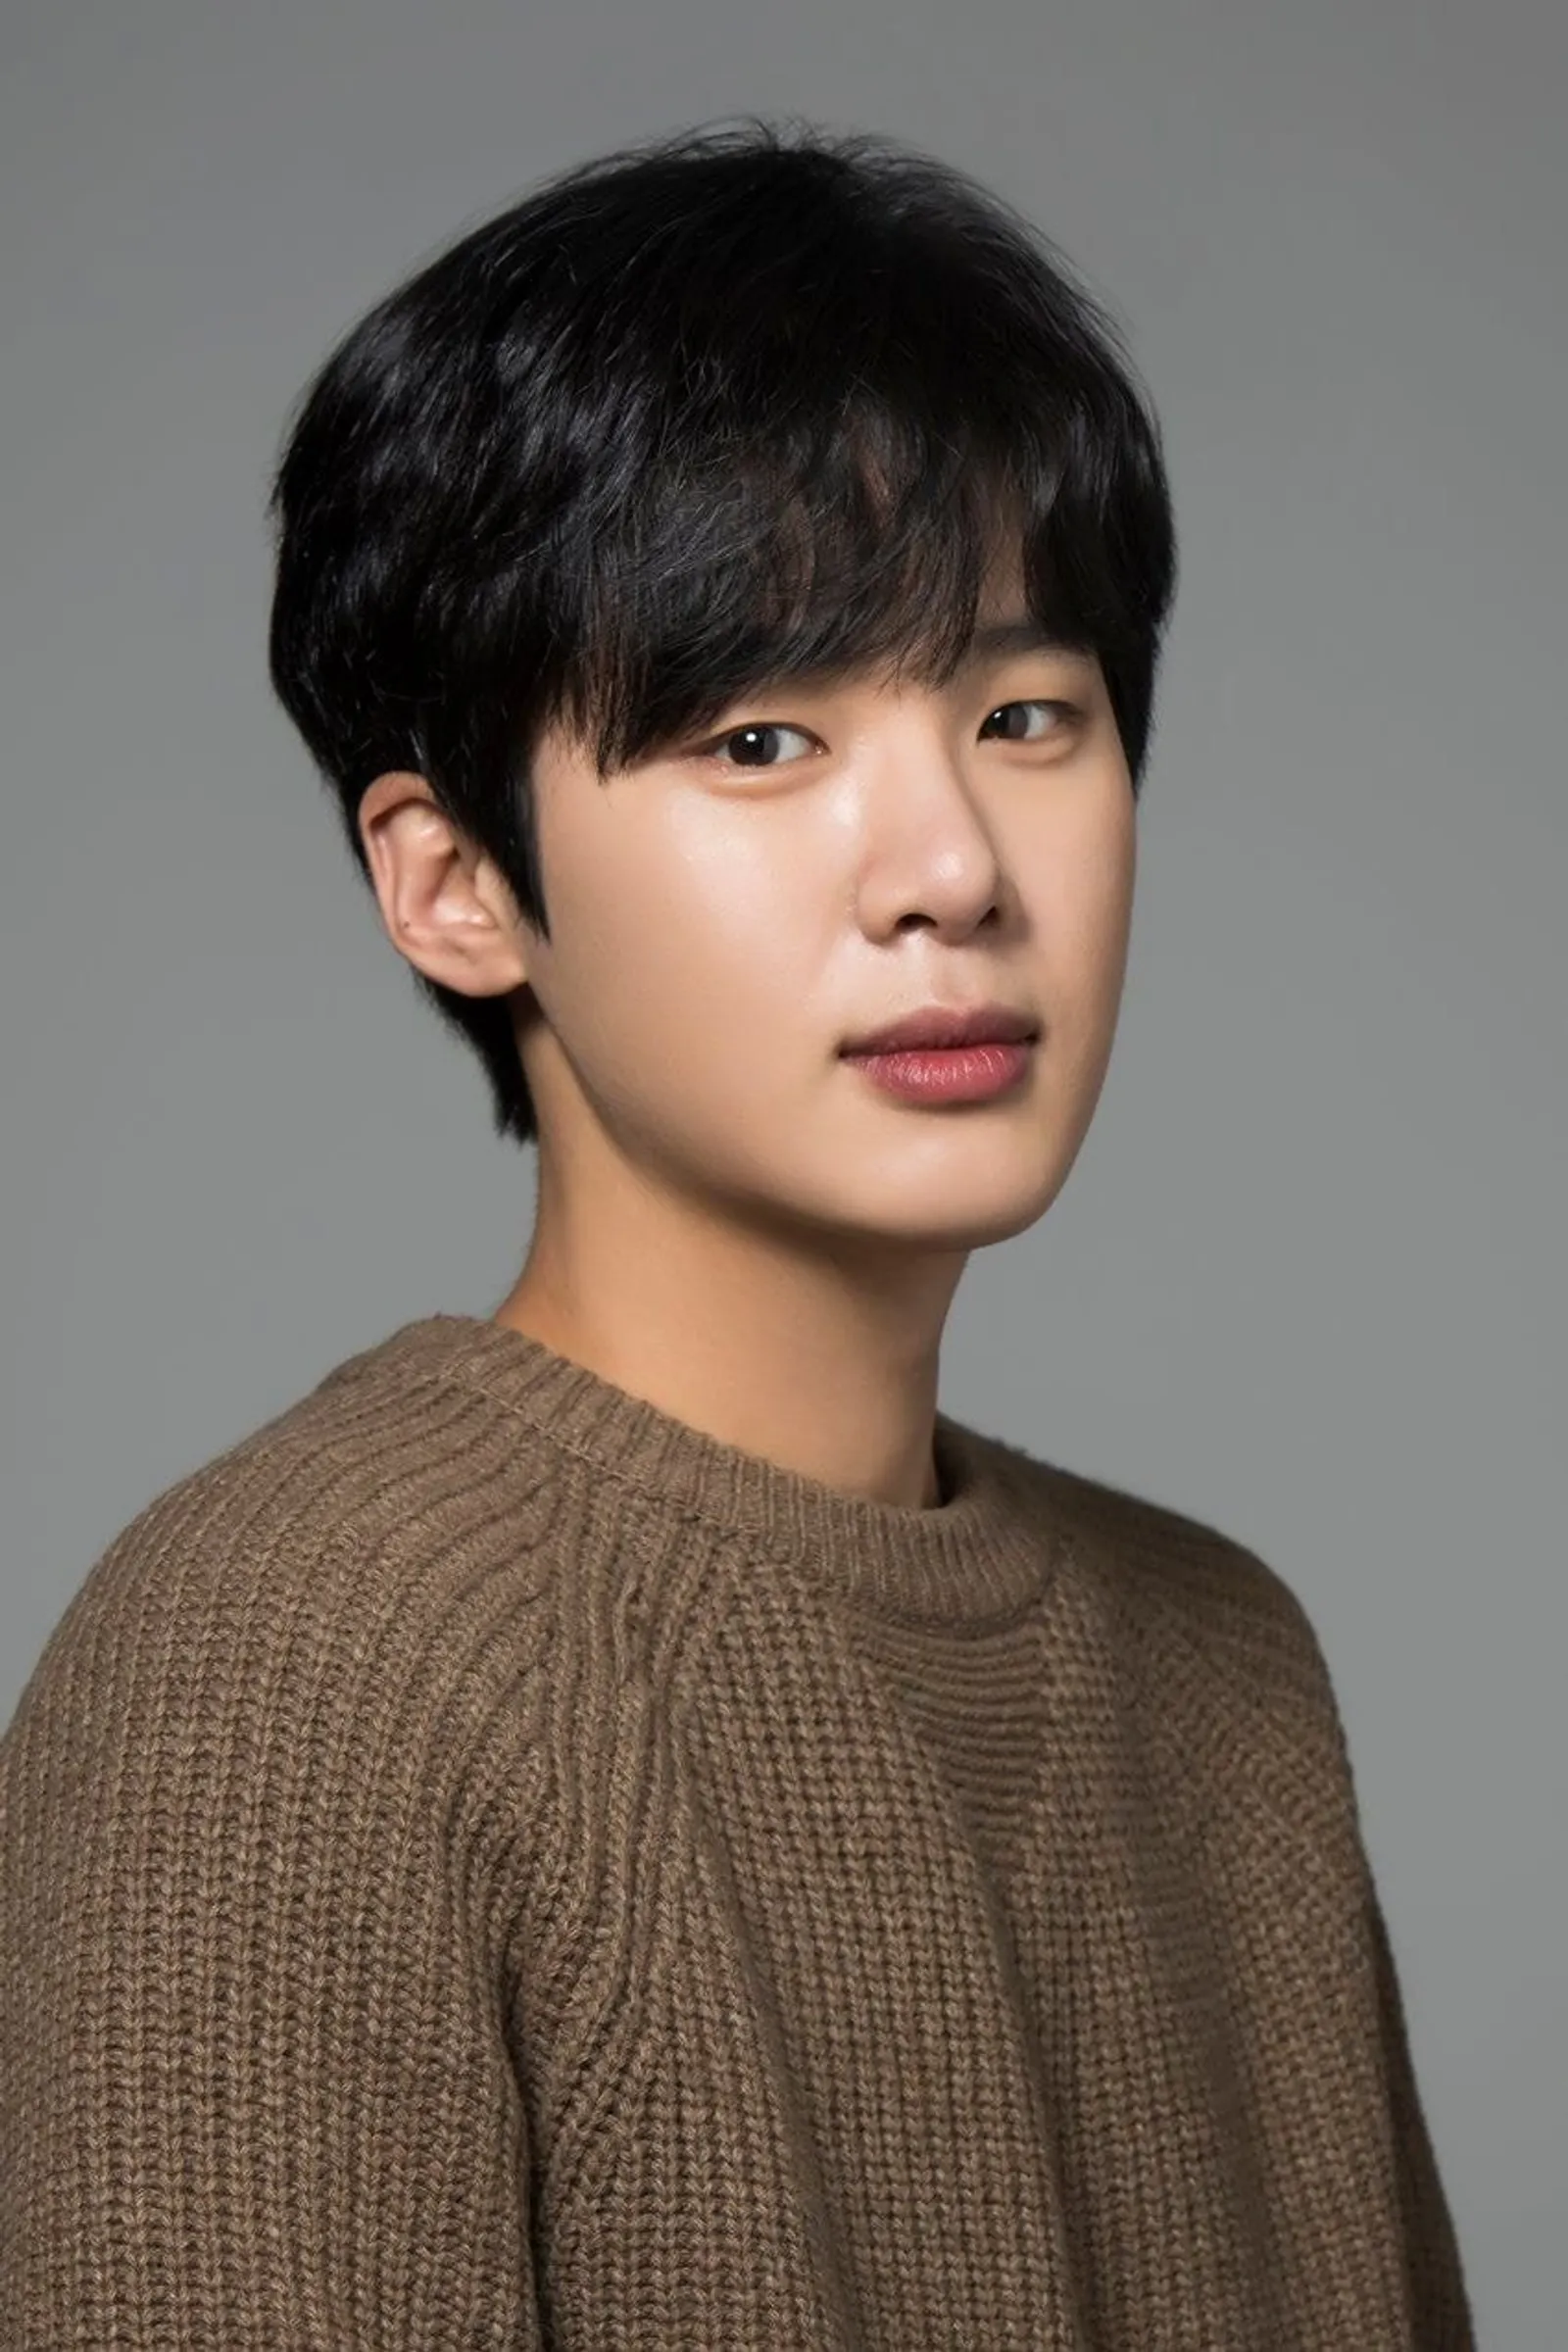 Kronologi Panjang dan Fakta Kasus Bullying Aktor Kim Dong Hee